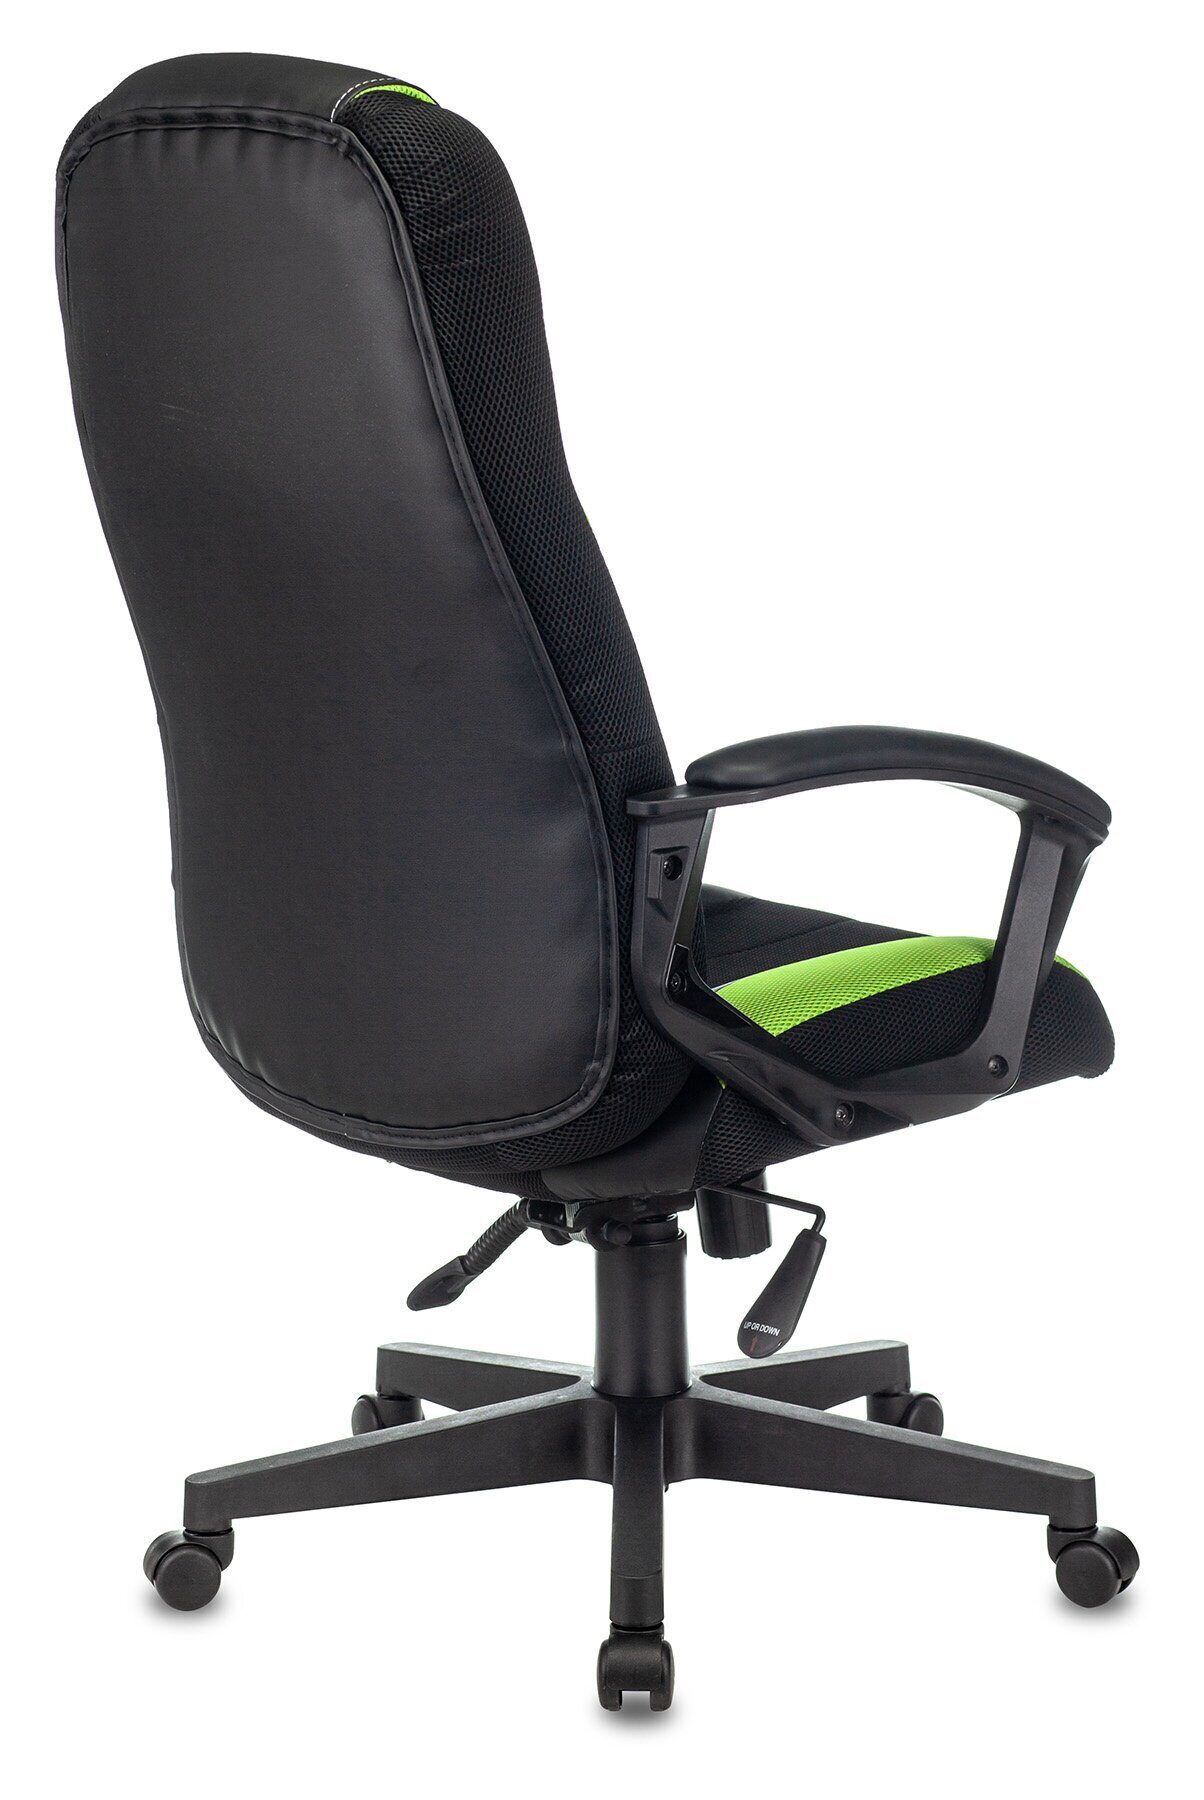 Кресло игровое Бюрократ ZOMBIE 9 Ткань, механизм качания топ ган Lux, черно-зеленое викинг 9